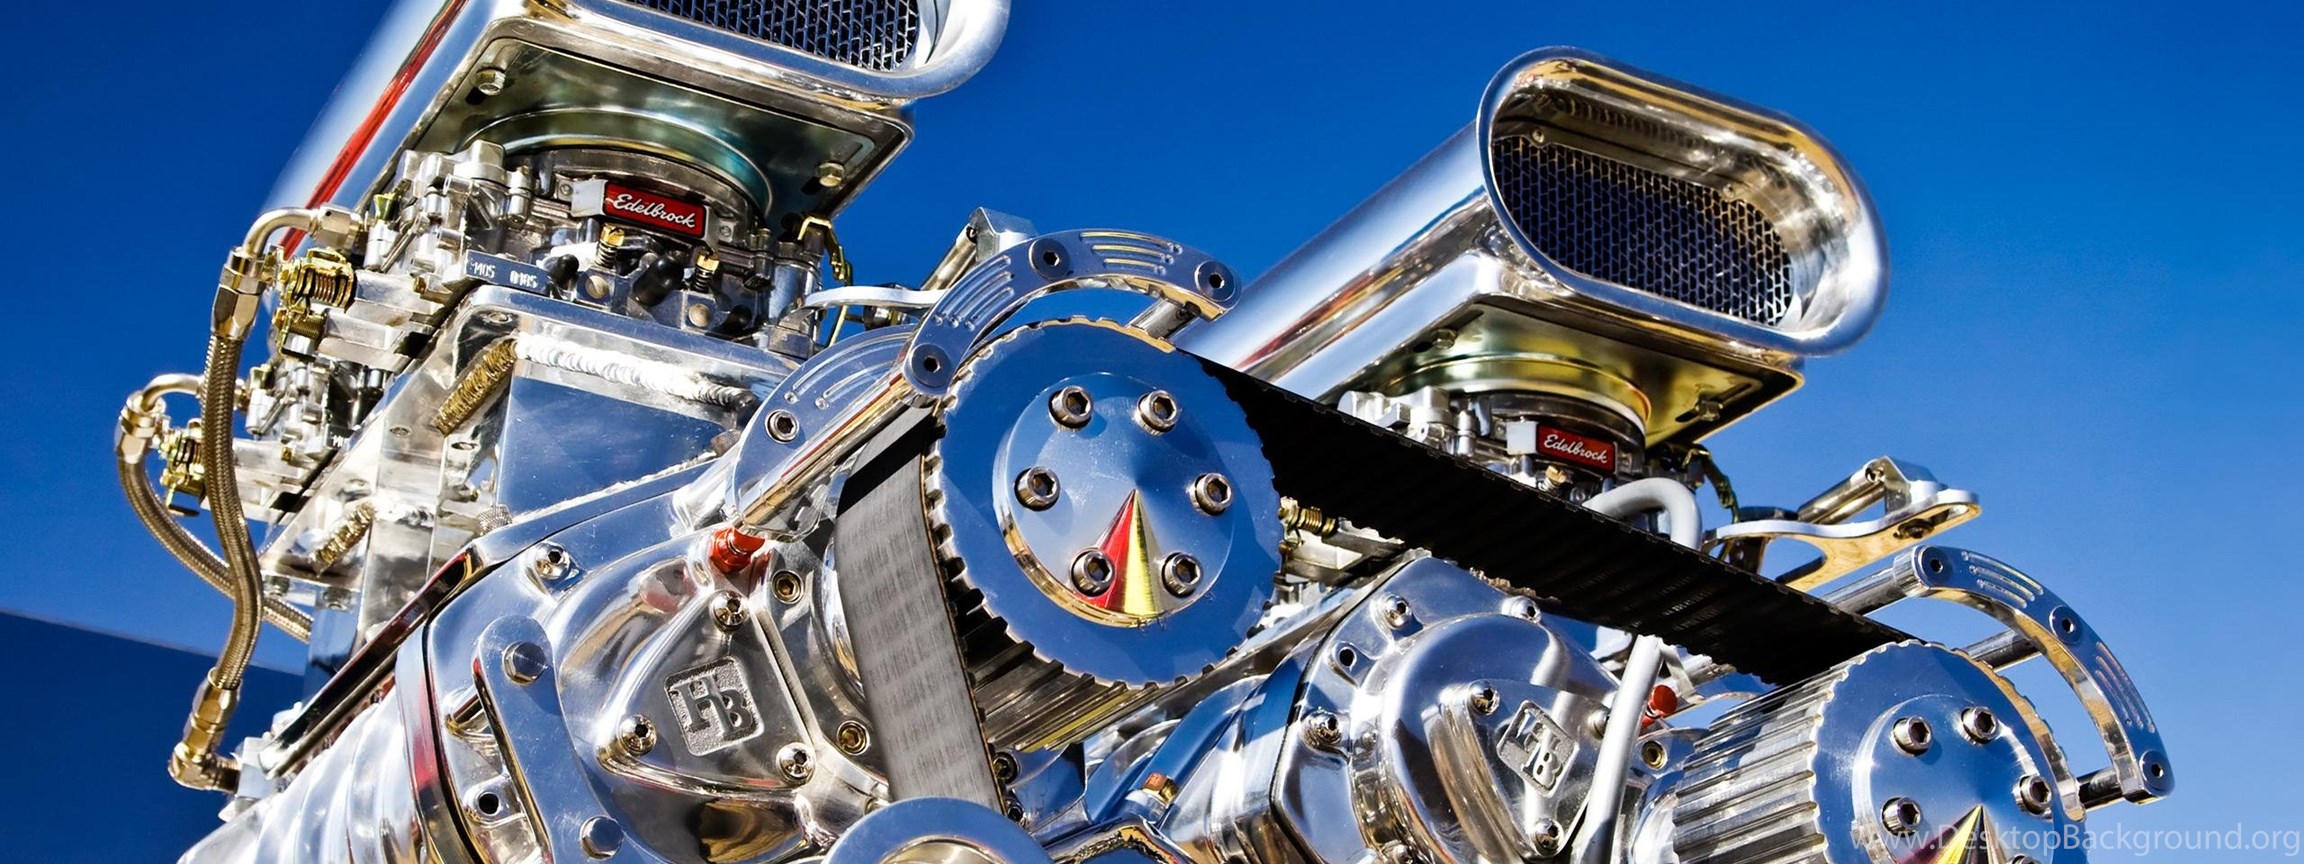 HD Engine Wallpaper, Engine Background & Engine Image Desktop Background